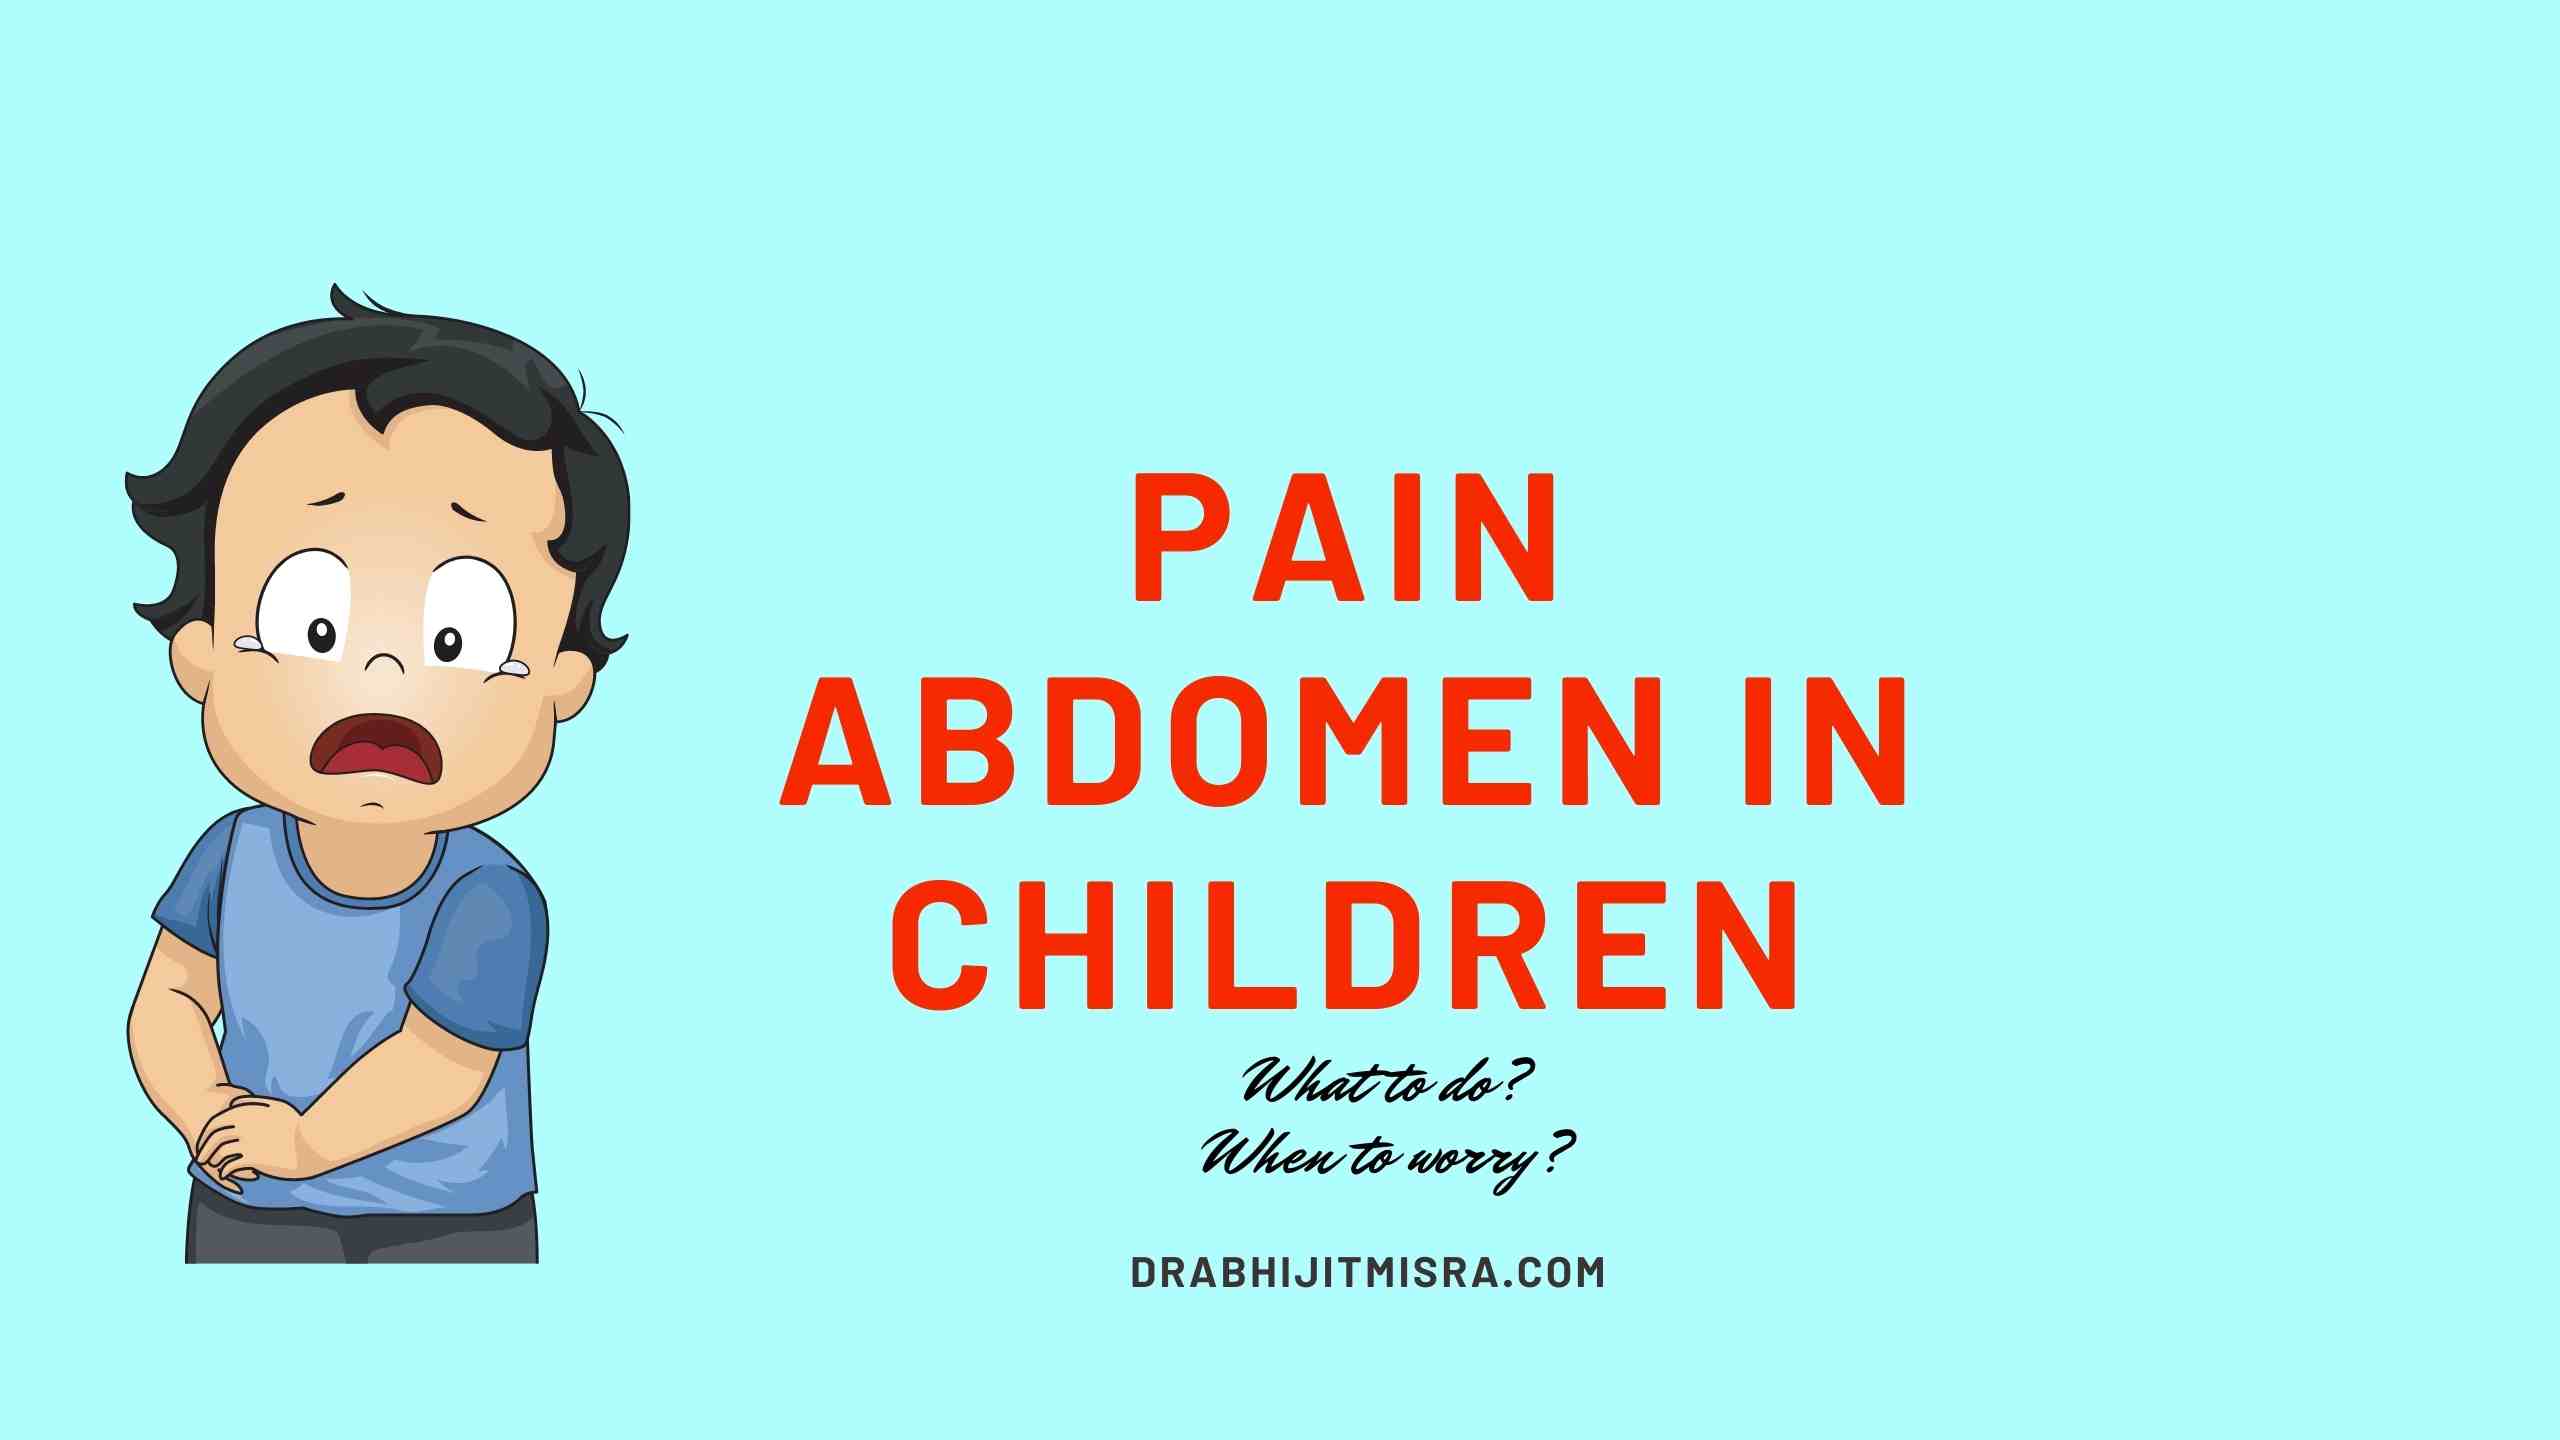 PAIN ABDOMEN IN CHILDREN